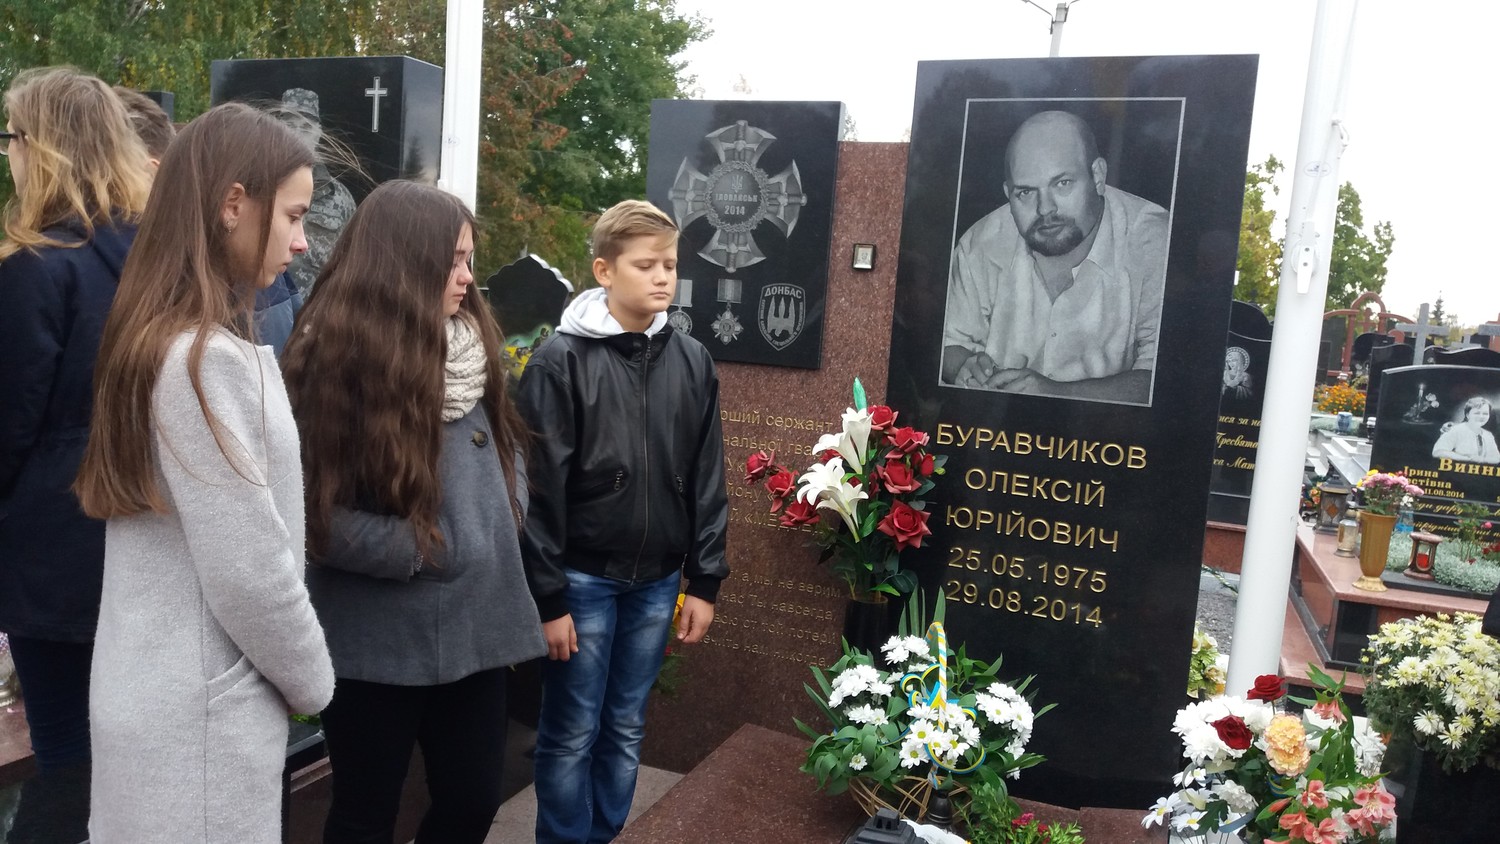 Покладання квітів до могили Олексія Буравчикова